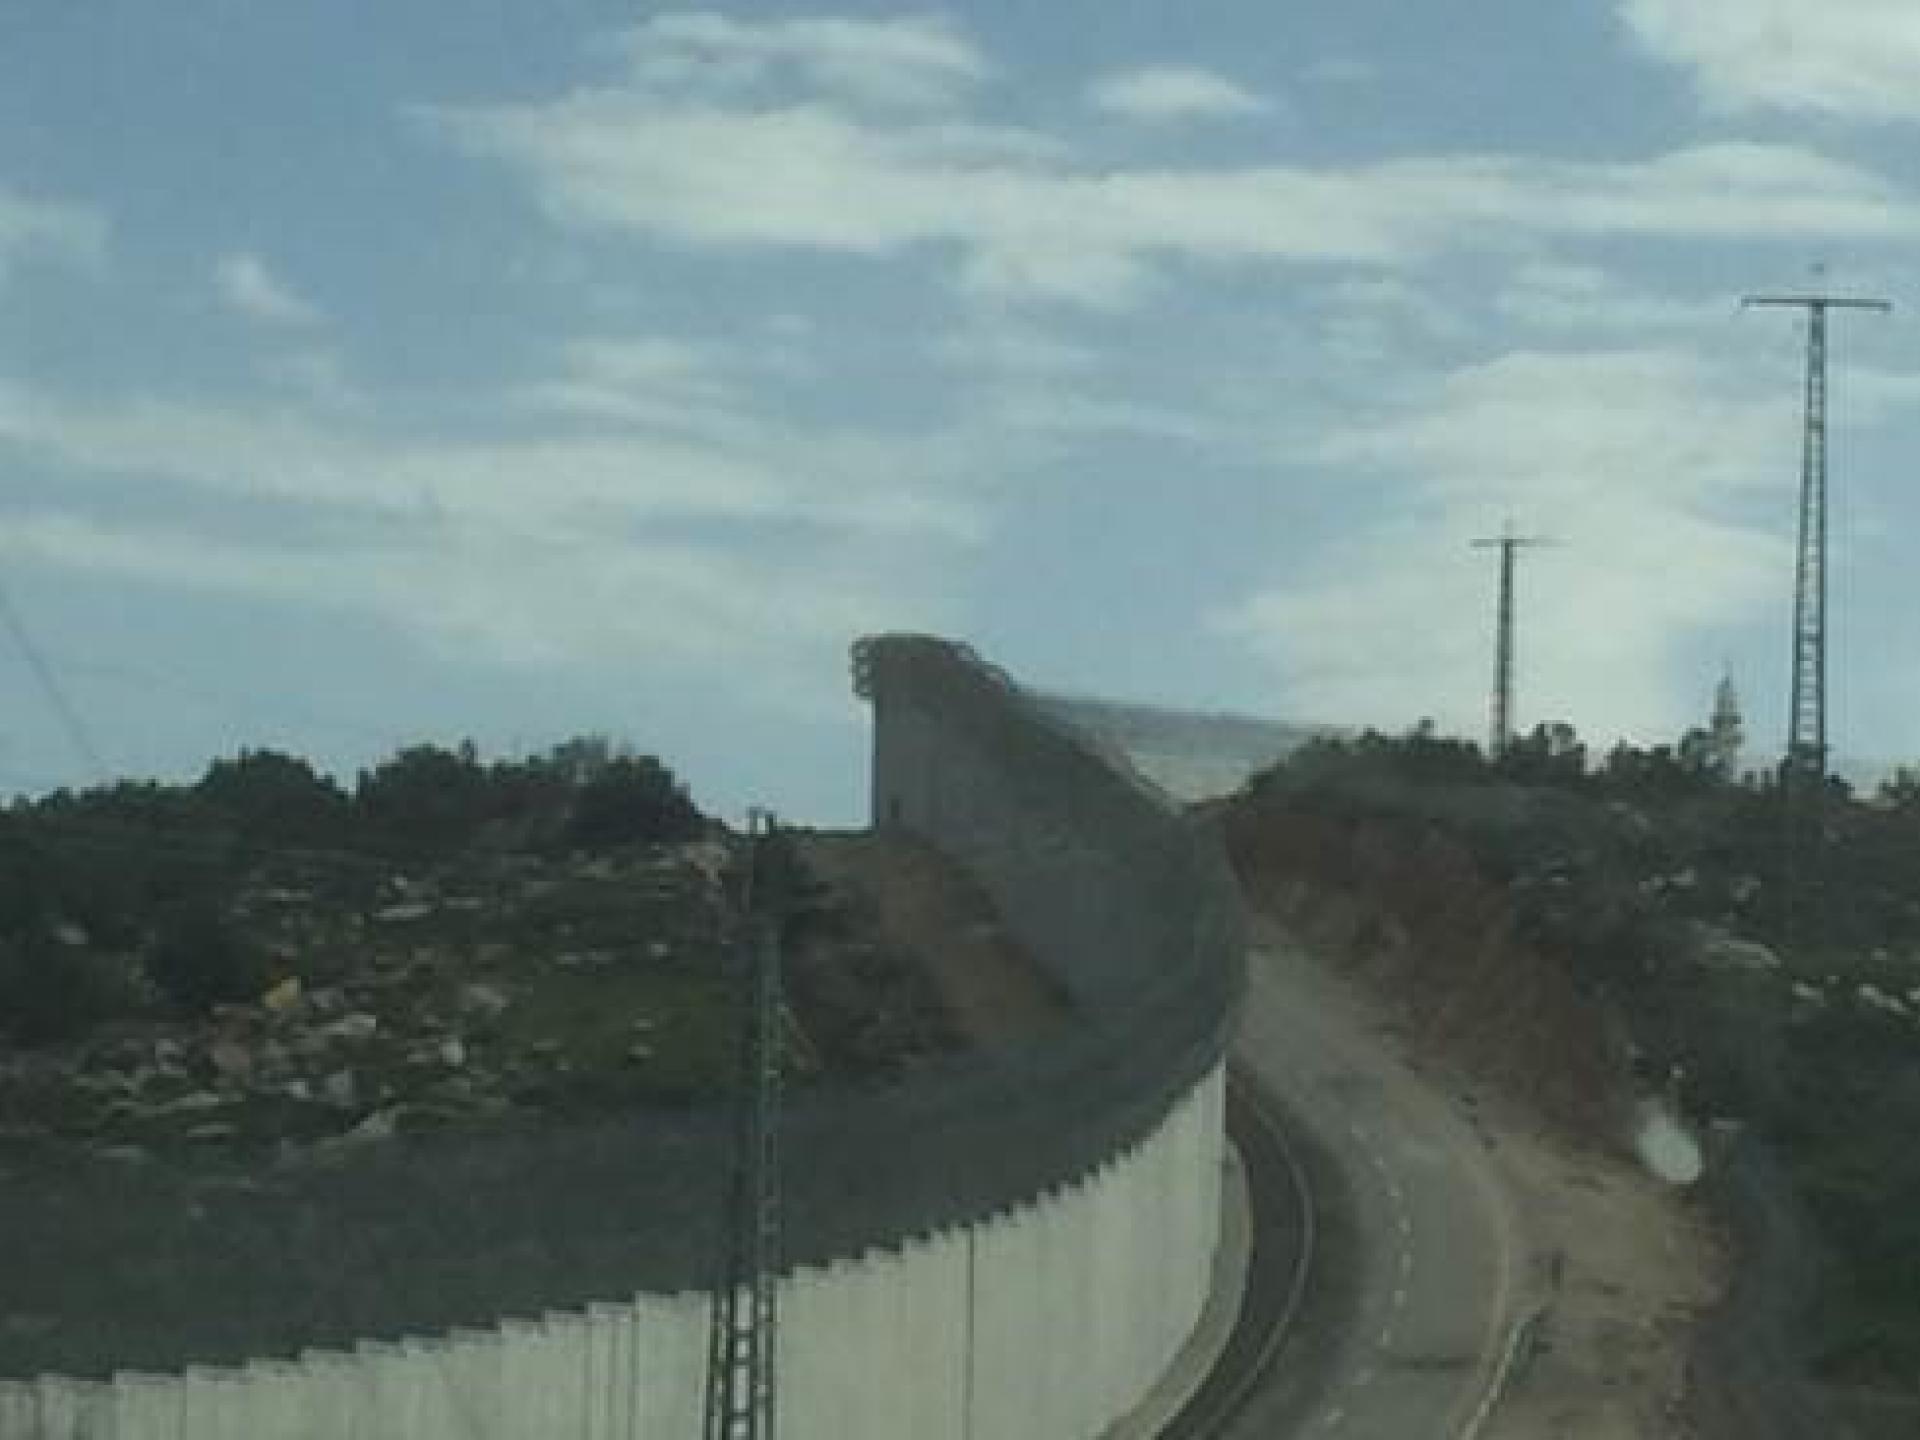 חומת ההפרדה באזור התנחלות נגוהות נמצאת על הקו הירוק, אשר נקבע כקו הפרדה בין ישראל לשכנותיה ב 1949. נגוהות נמצאת בצד המזרחי (הפלסטיני) של החומה; ישראל נמצאת בצד המערבי